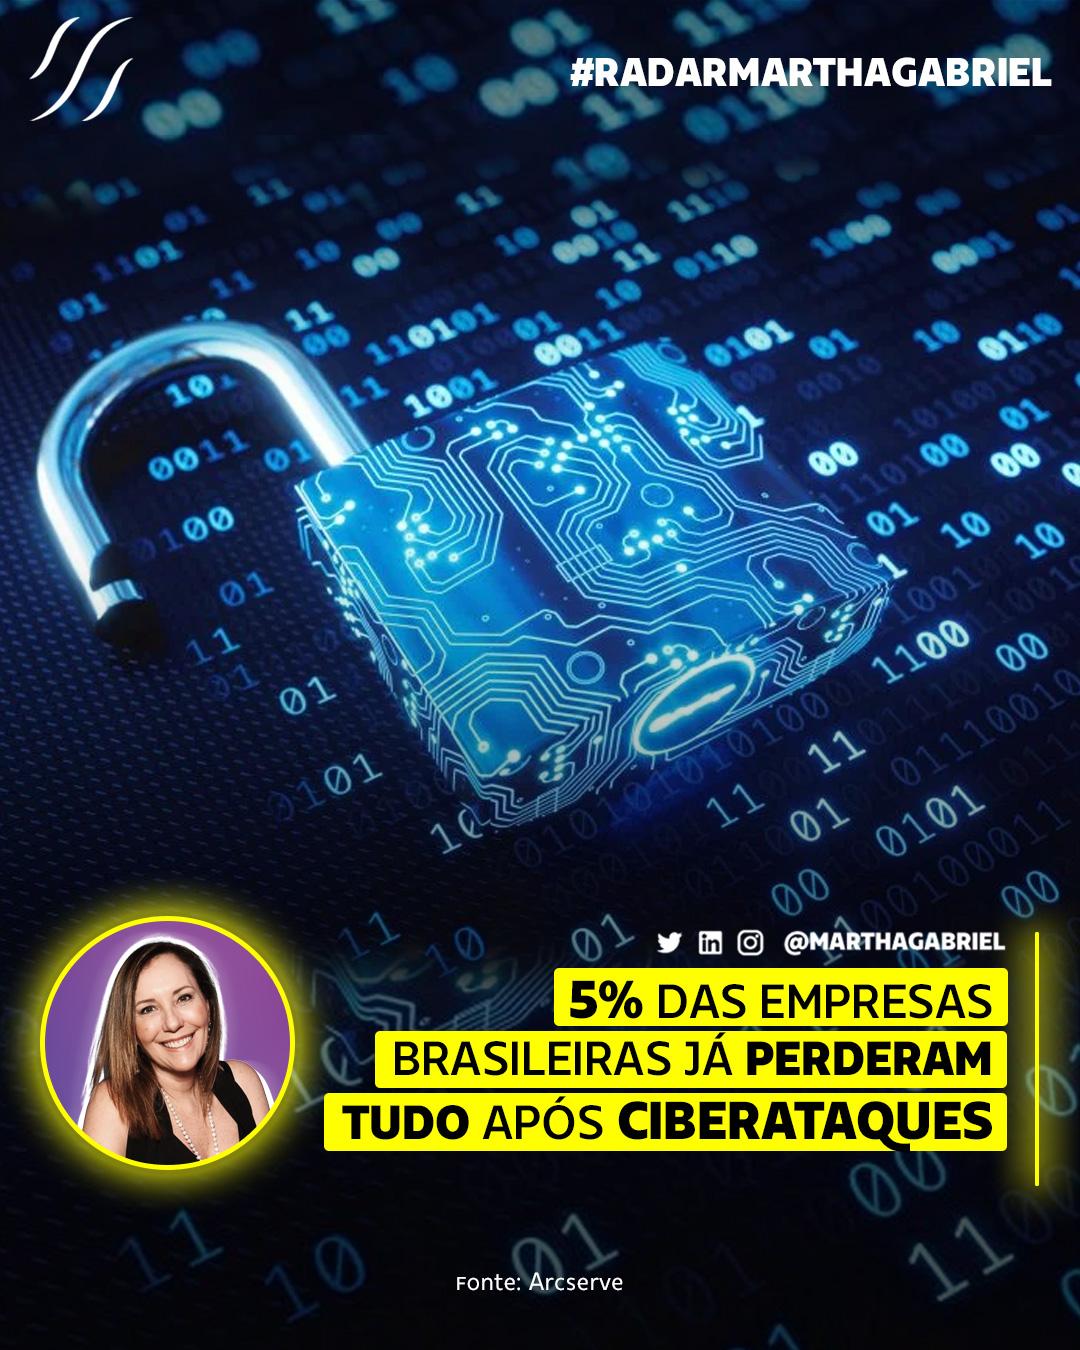 5% das empresas brasileiras já perderam tudo após ciberataques